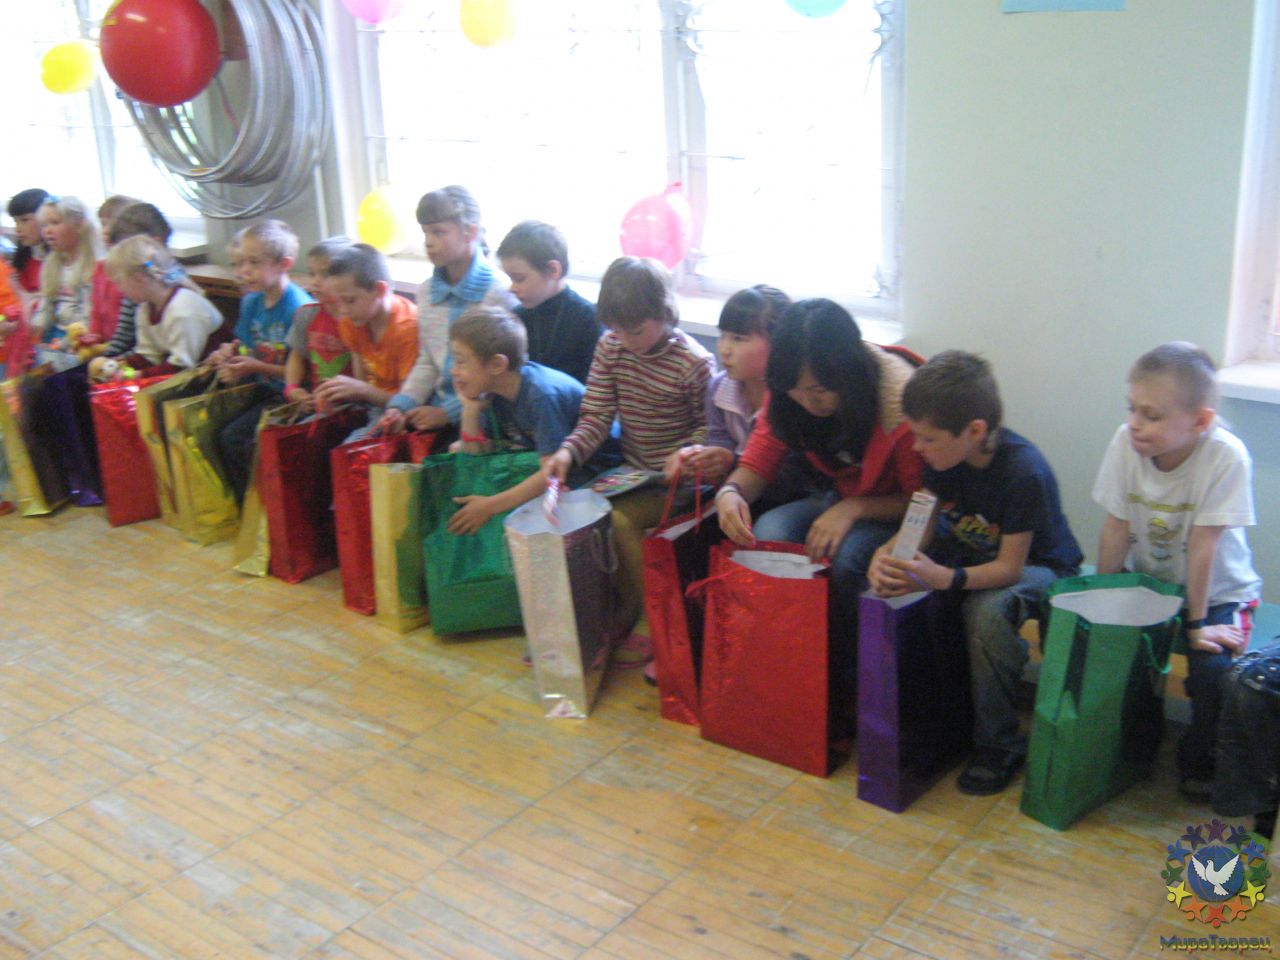 подарки детям - Отчет о благотворительном празднике 1 июня 2010г.